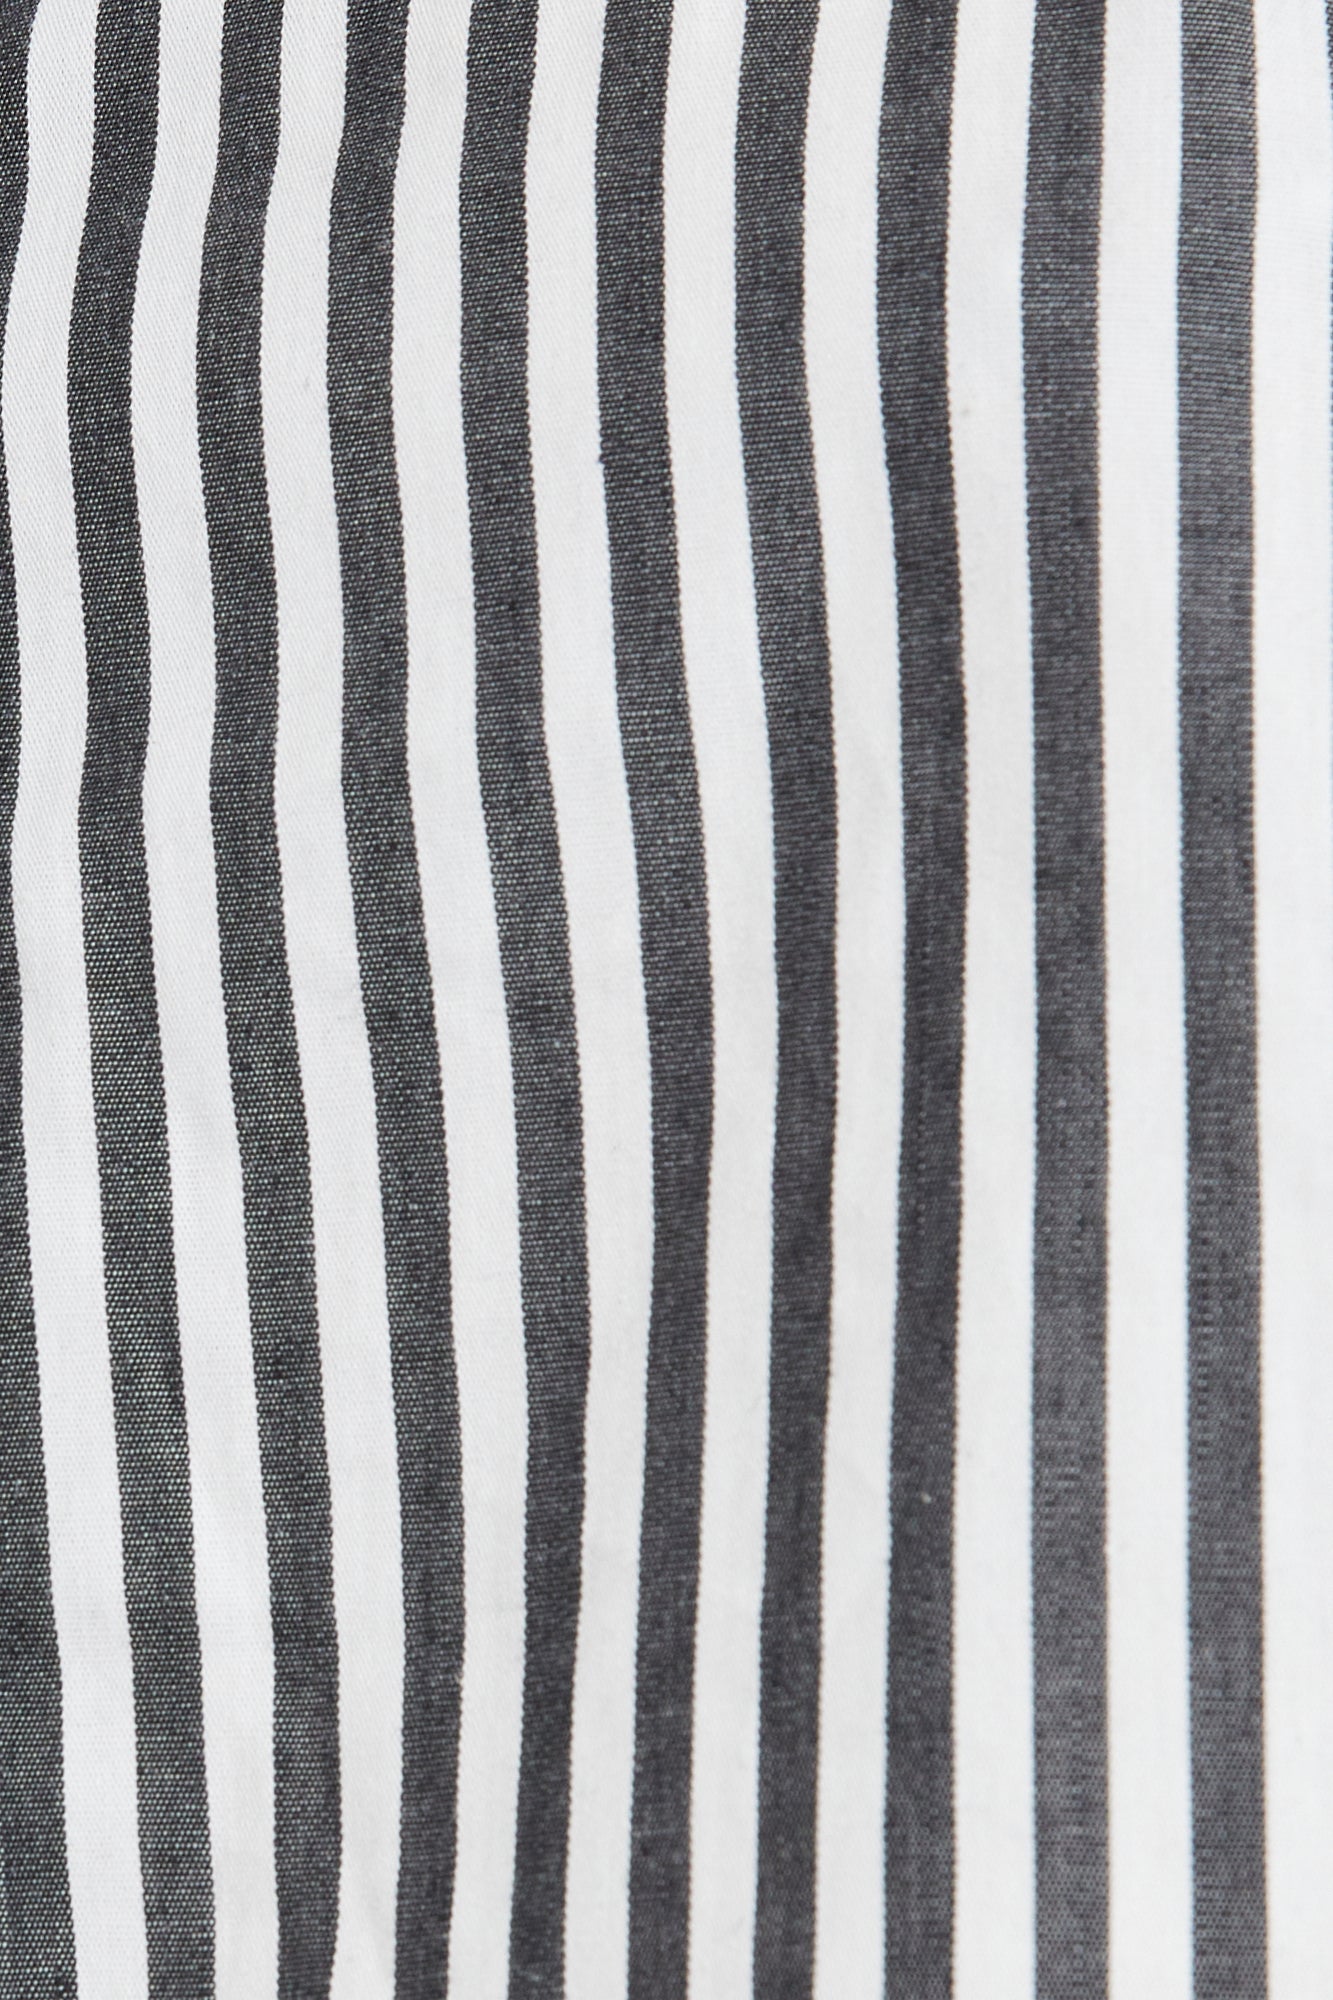 The Franca Stripe Short By GINIA In Black & White Stripe